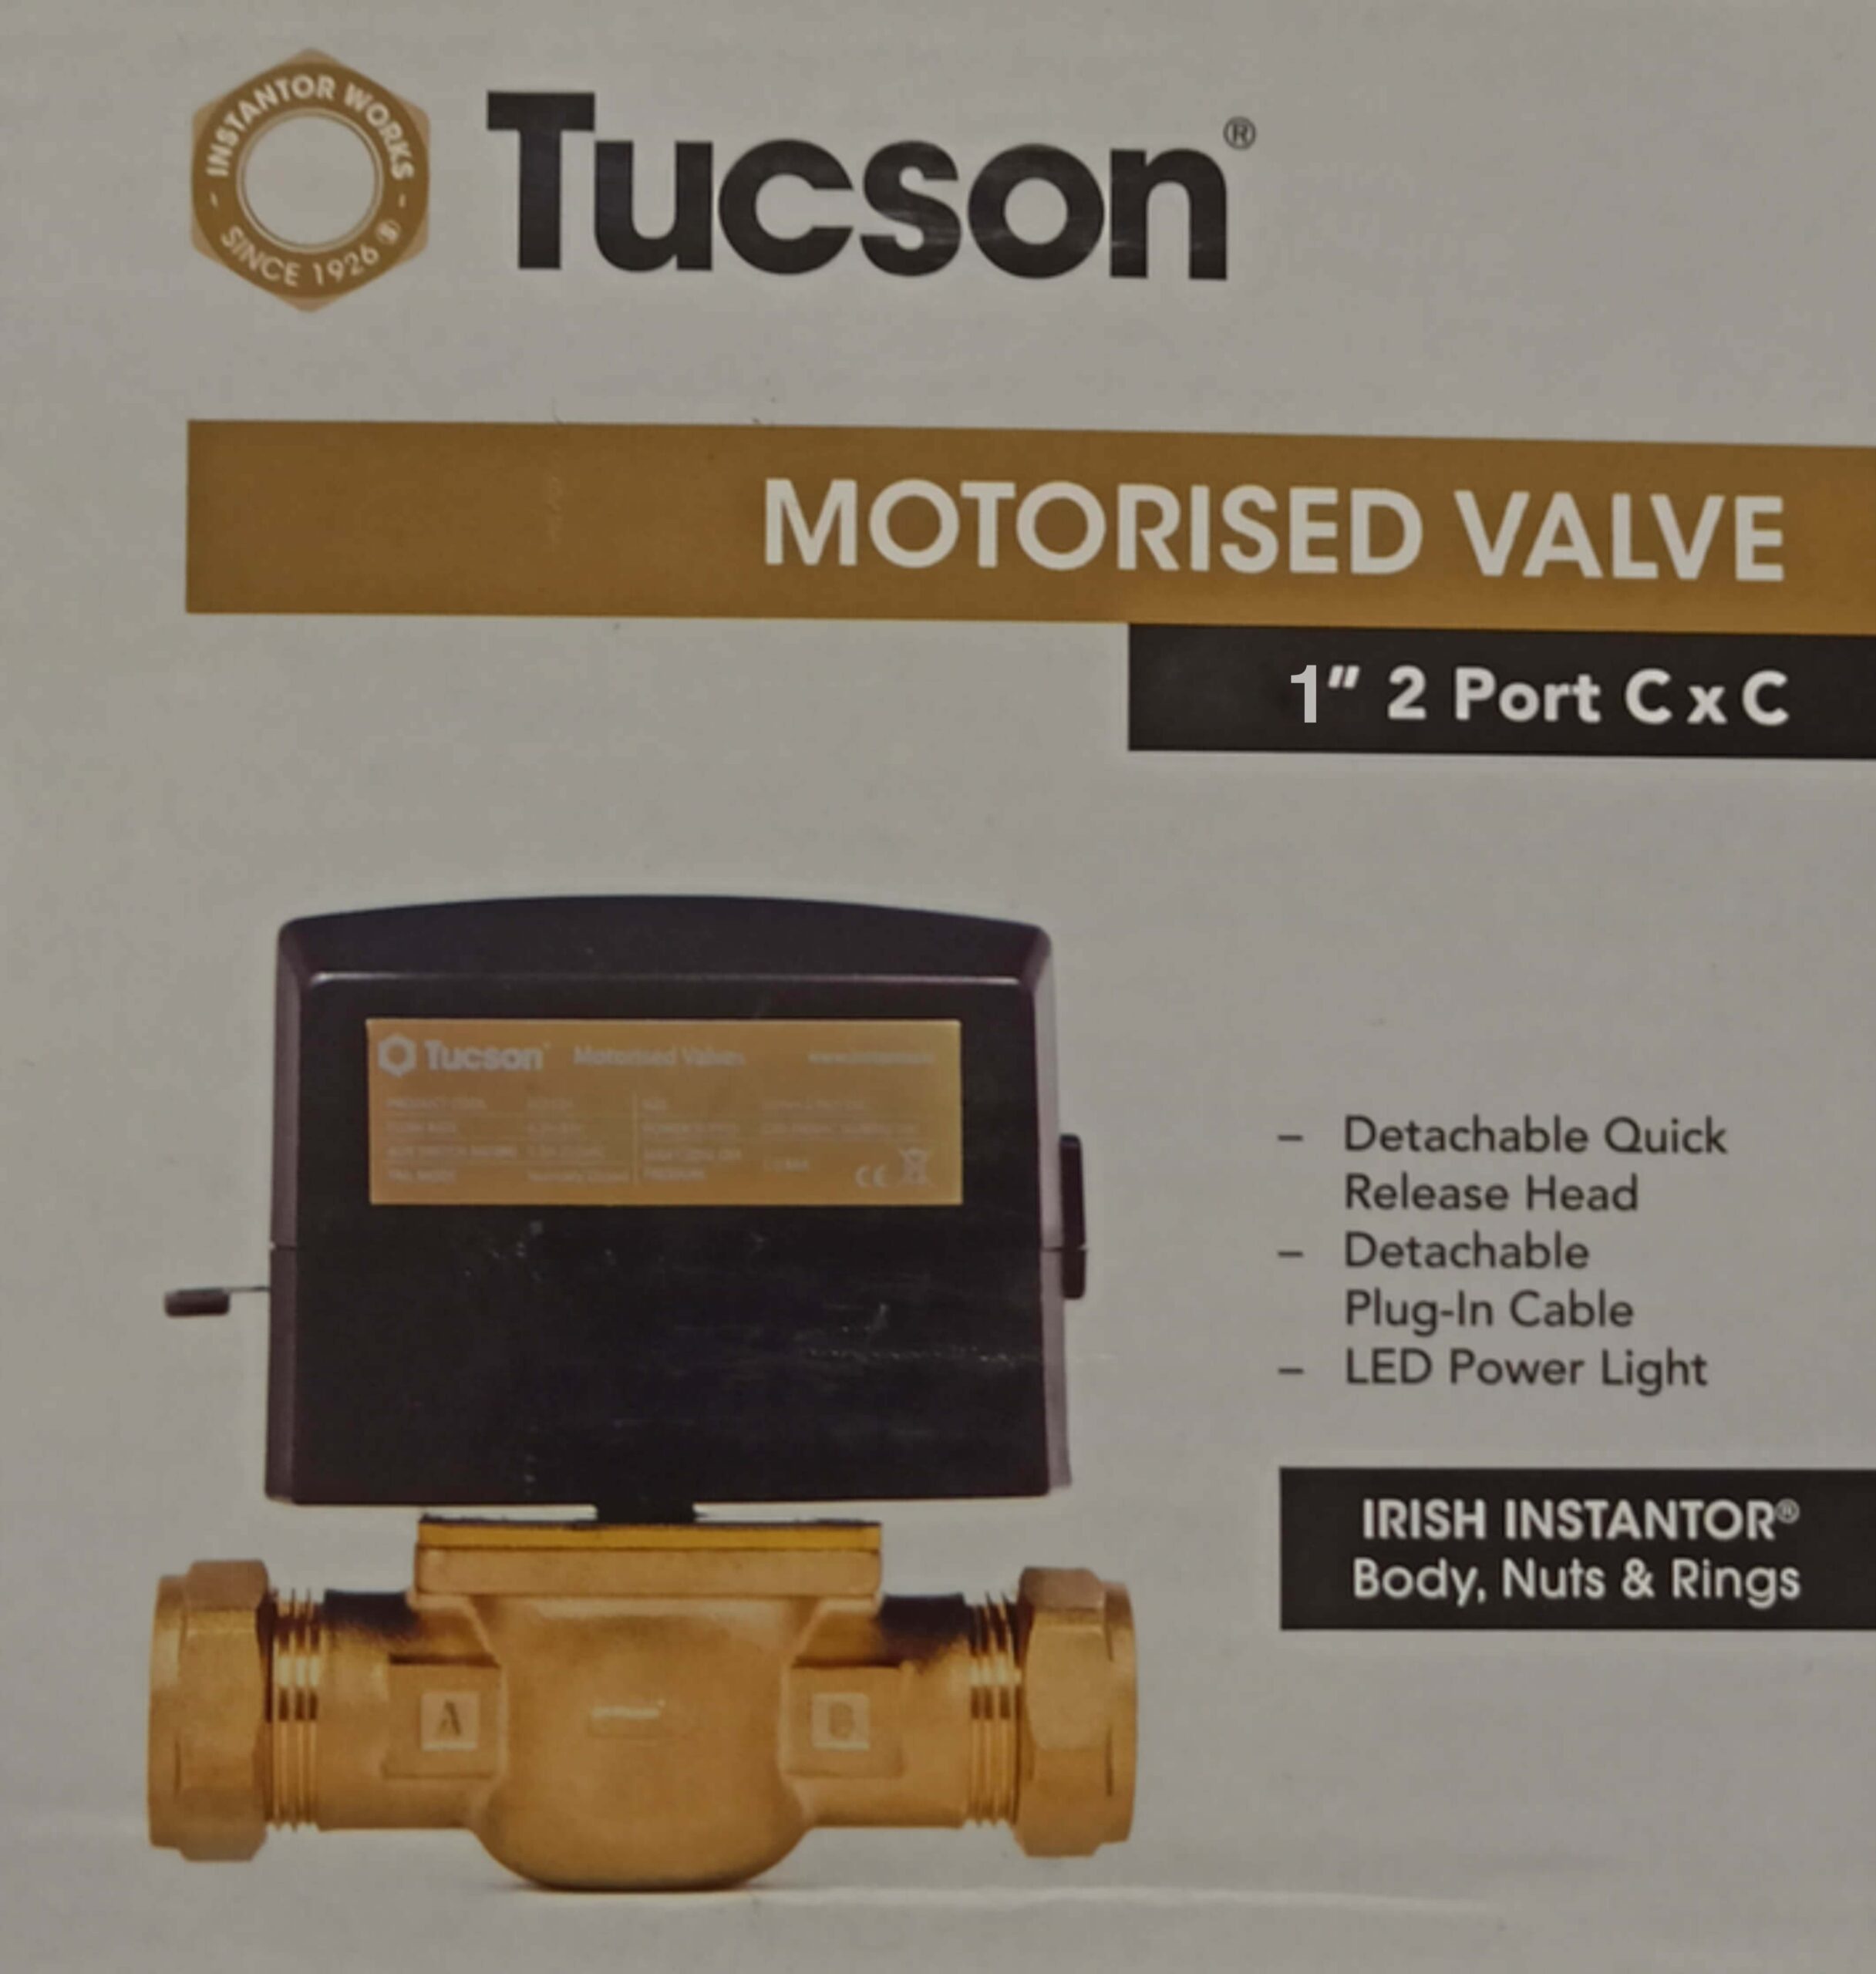 tucson 1 inch 2 port c x c motorised valve